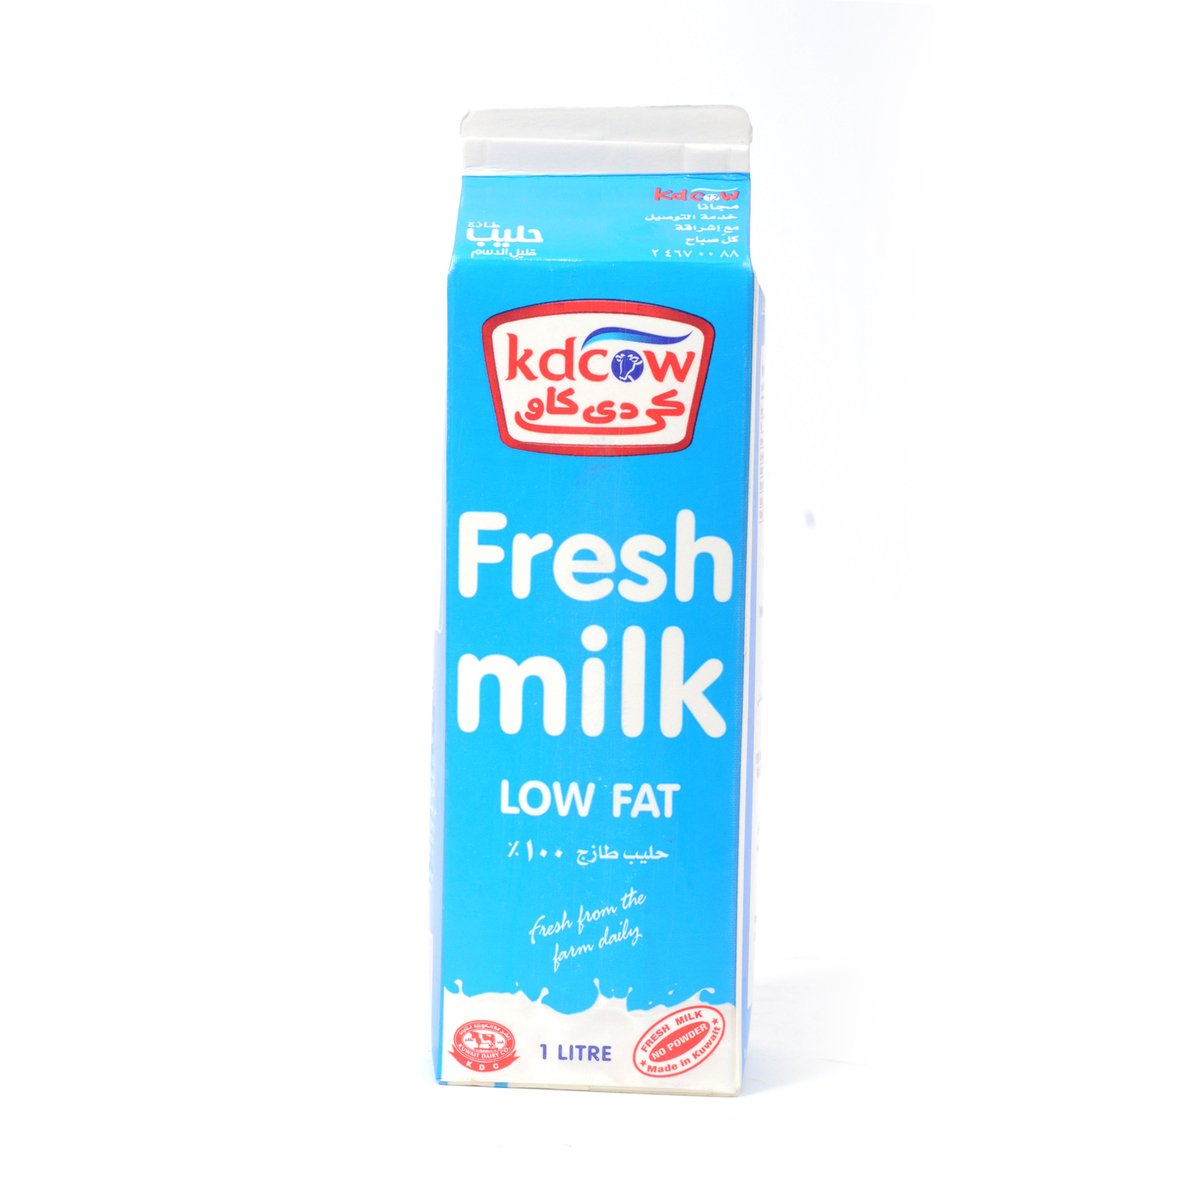 Kdcow Fresh Milk Low Fat 1Litre